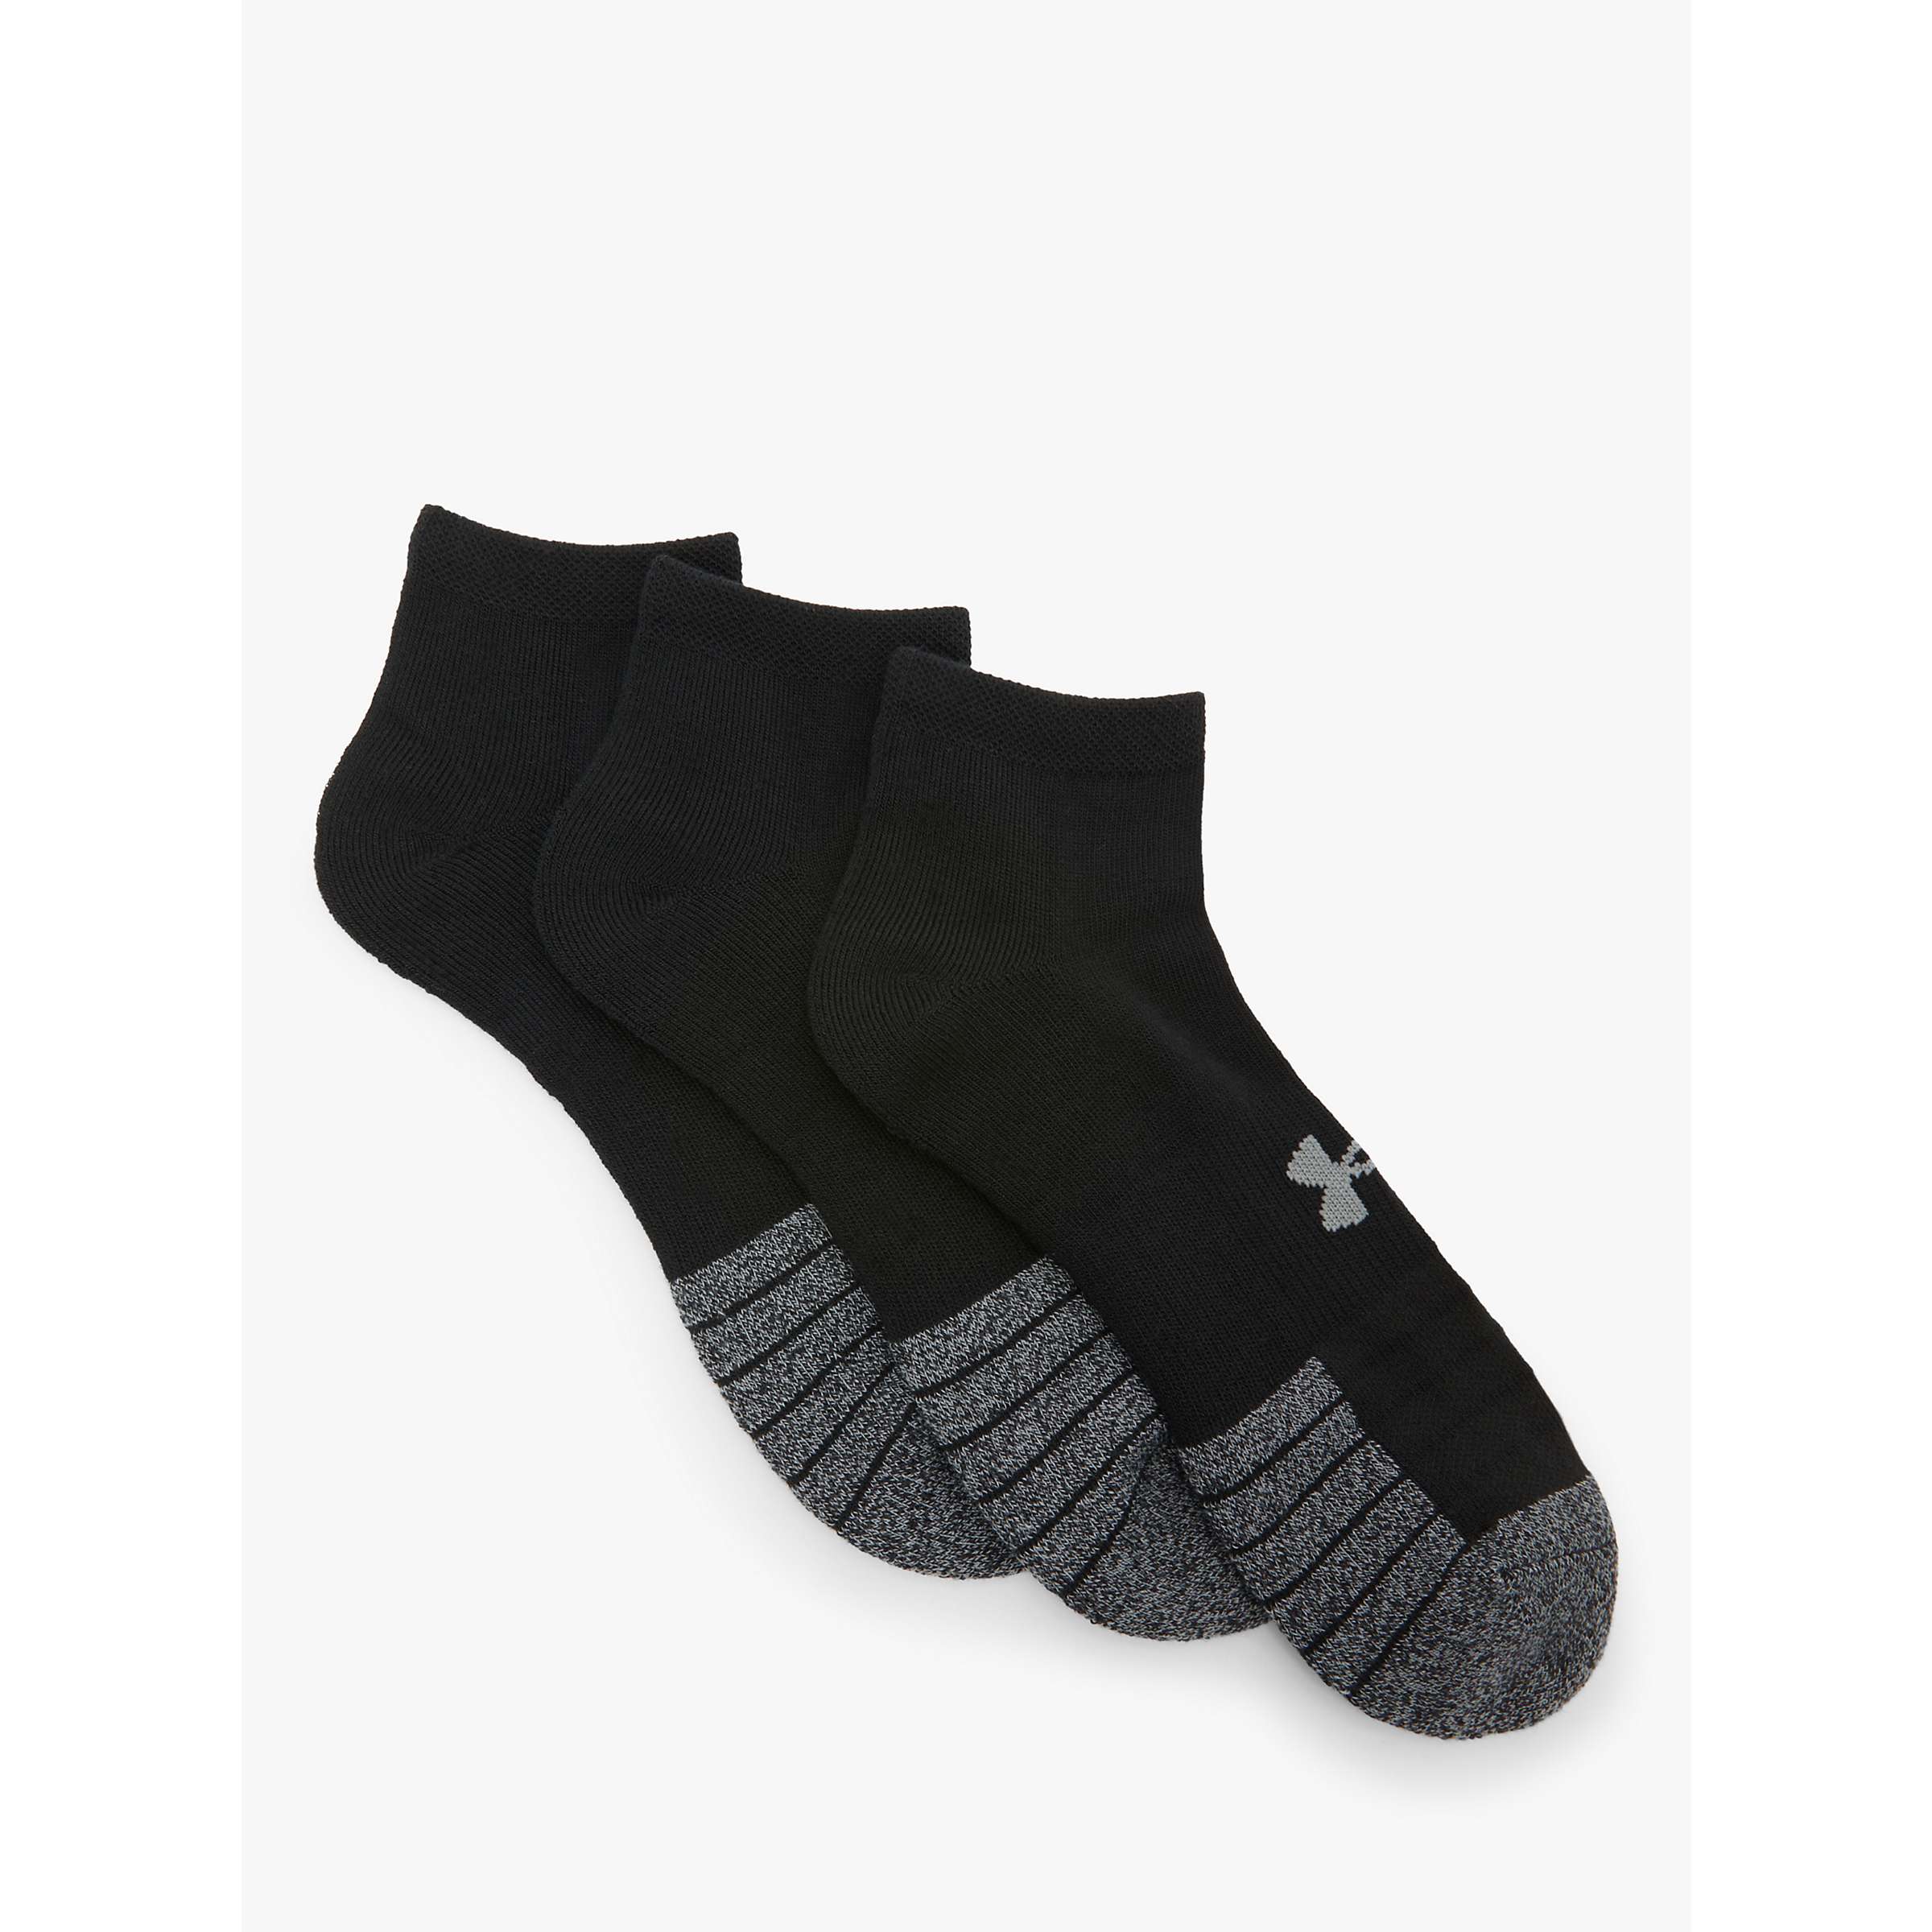 Buy Under Armour HeatGear Lo Cut Socks, Pack of 3, Black/Steel Online at johnlewis.com